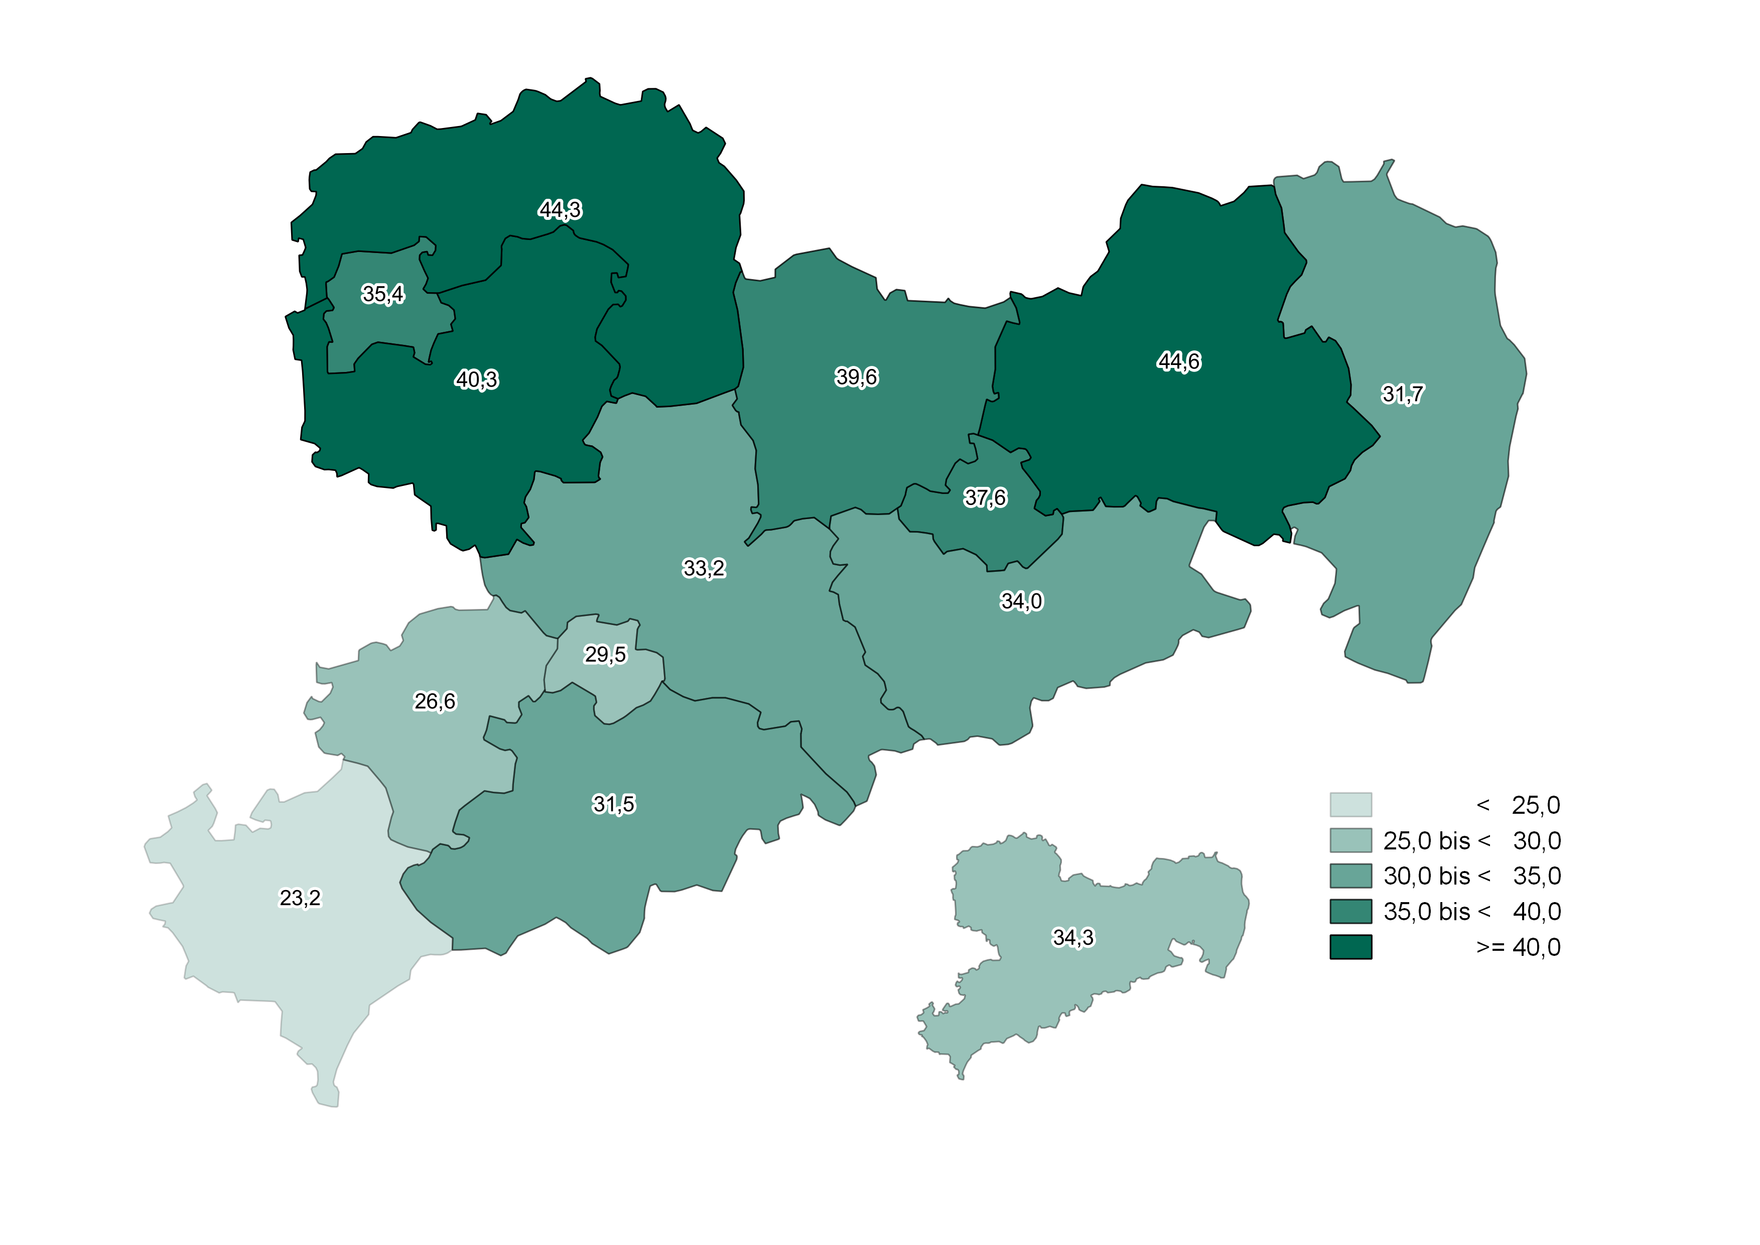 In den Landkreisen Leipzig, Nordsachsen und Meißen war der Anstieg der Bevölkerung über 80 Jahre mit bis zu 44,6 Prozent am höchsten. Im Landkreis Vogtland mit 23,2 Prozent am niedrigsten. Der Durchschnitt für Sachsen lag bei 34,3 Prozent.